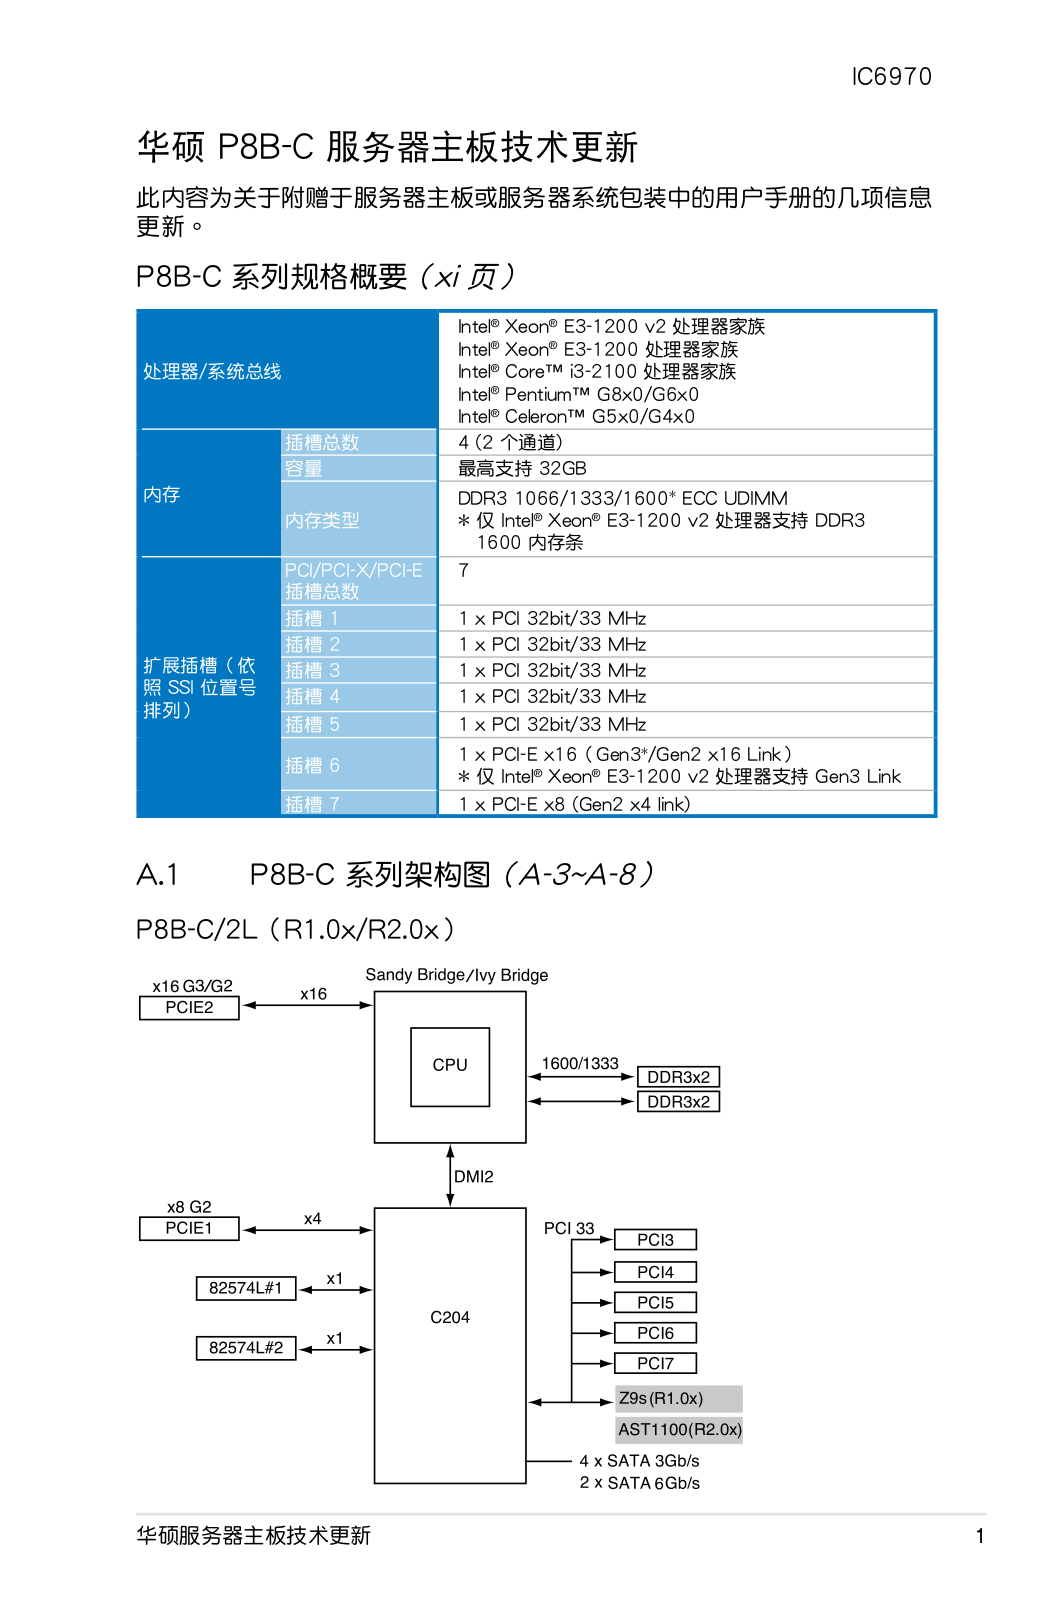 ASUS P8B-C-4L, IC6970 User Manual